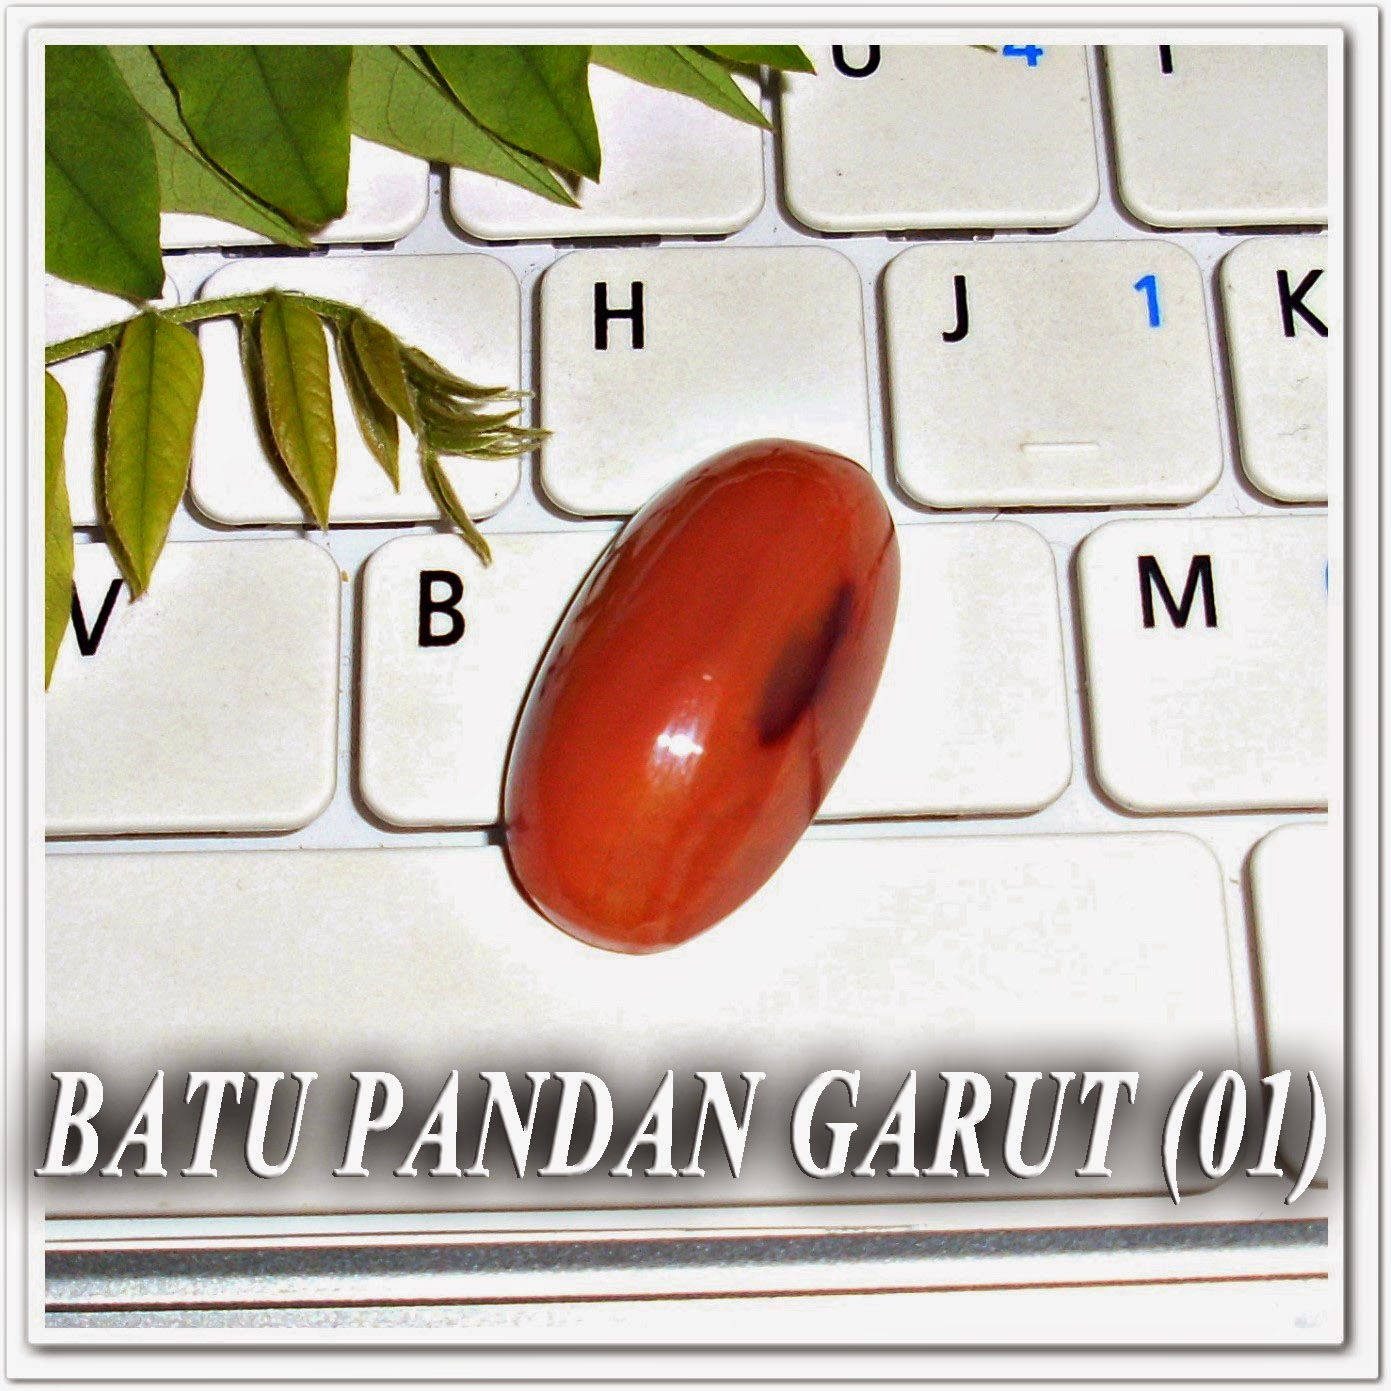 http://batuakik84.blogspot.com/2014/10/batu-pandan-garut-01.html